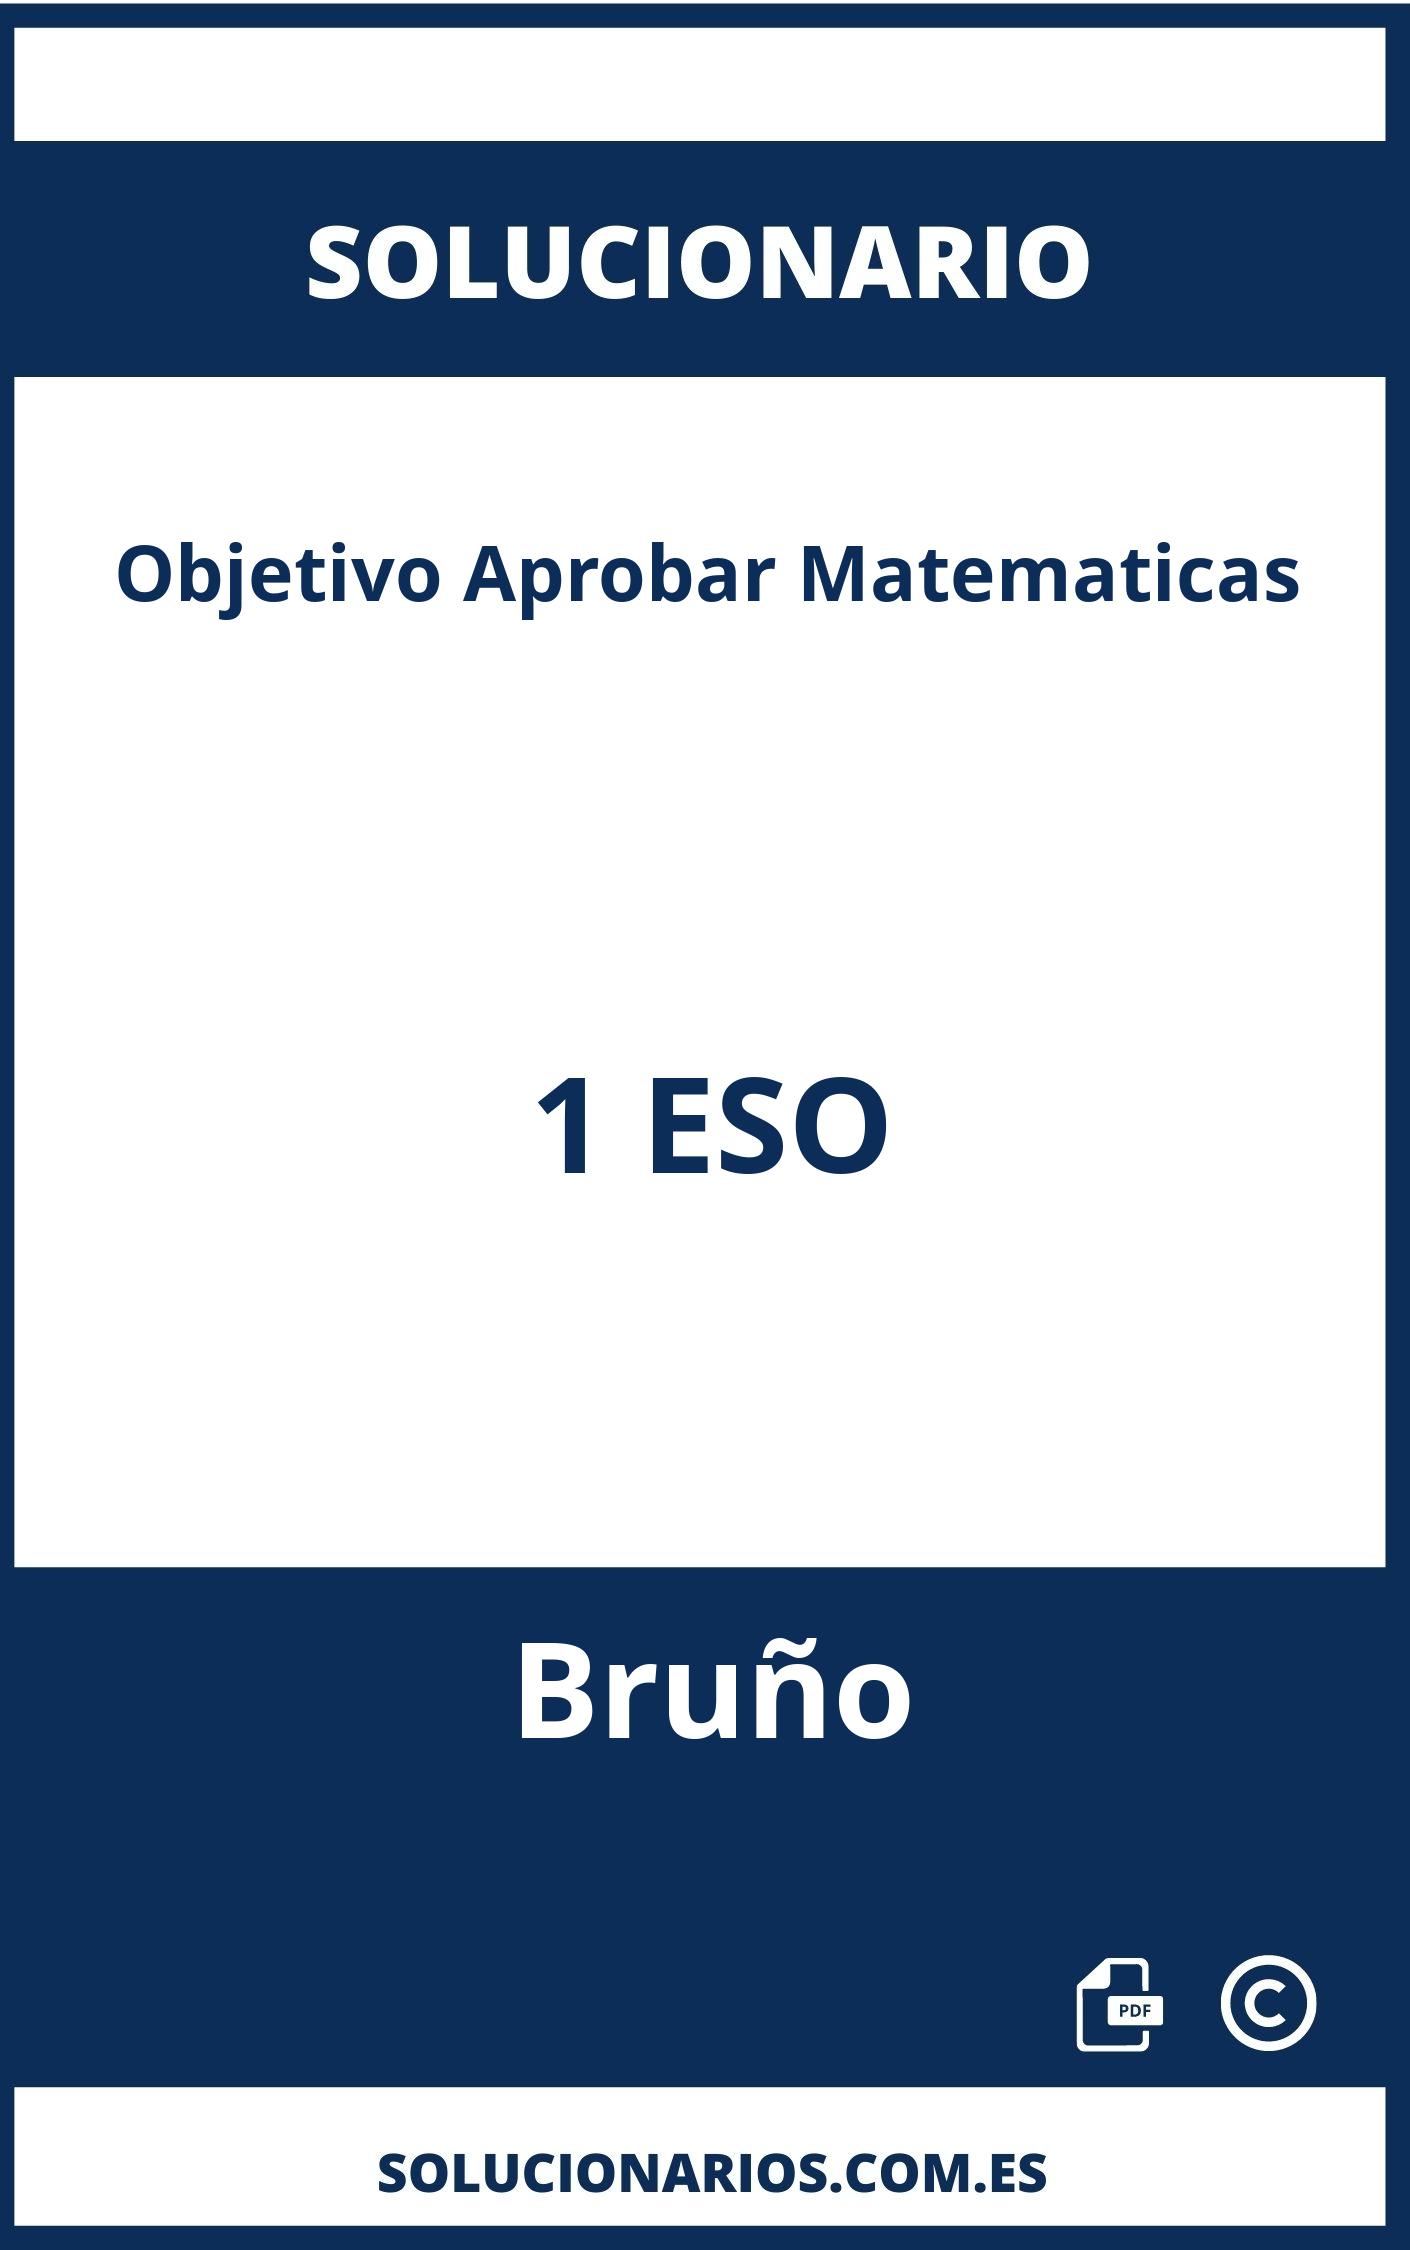 Solucionario Objetivo Aprobar Matematicas 1 ESO Bruño